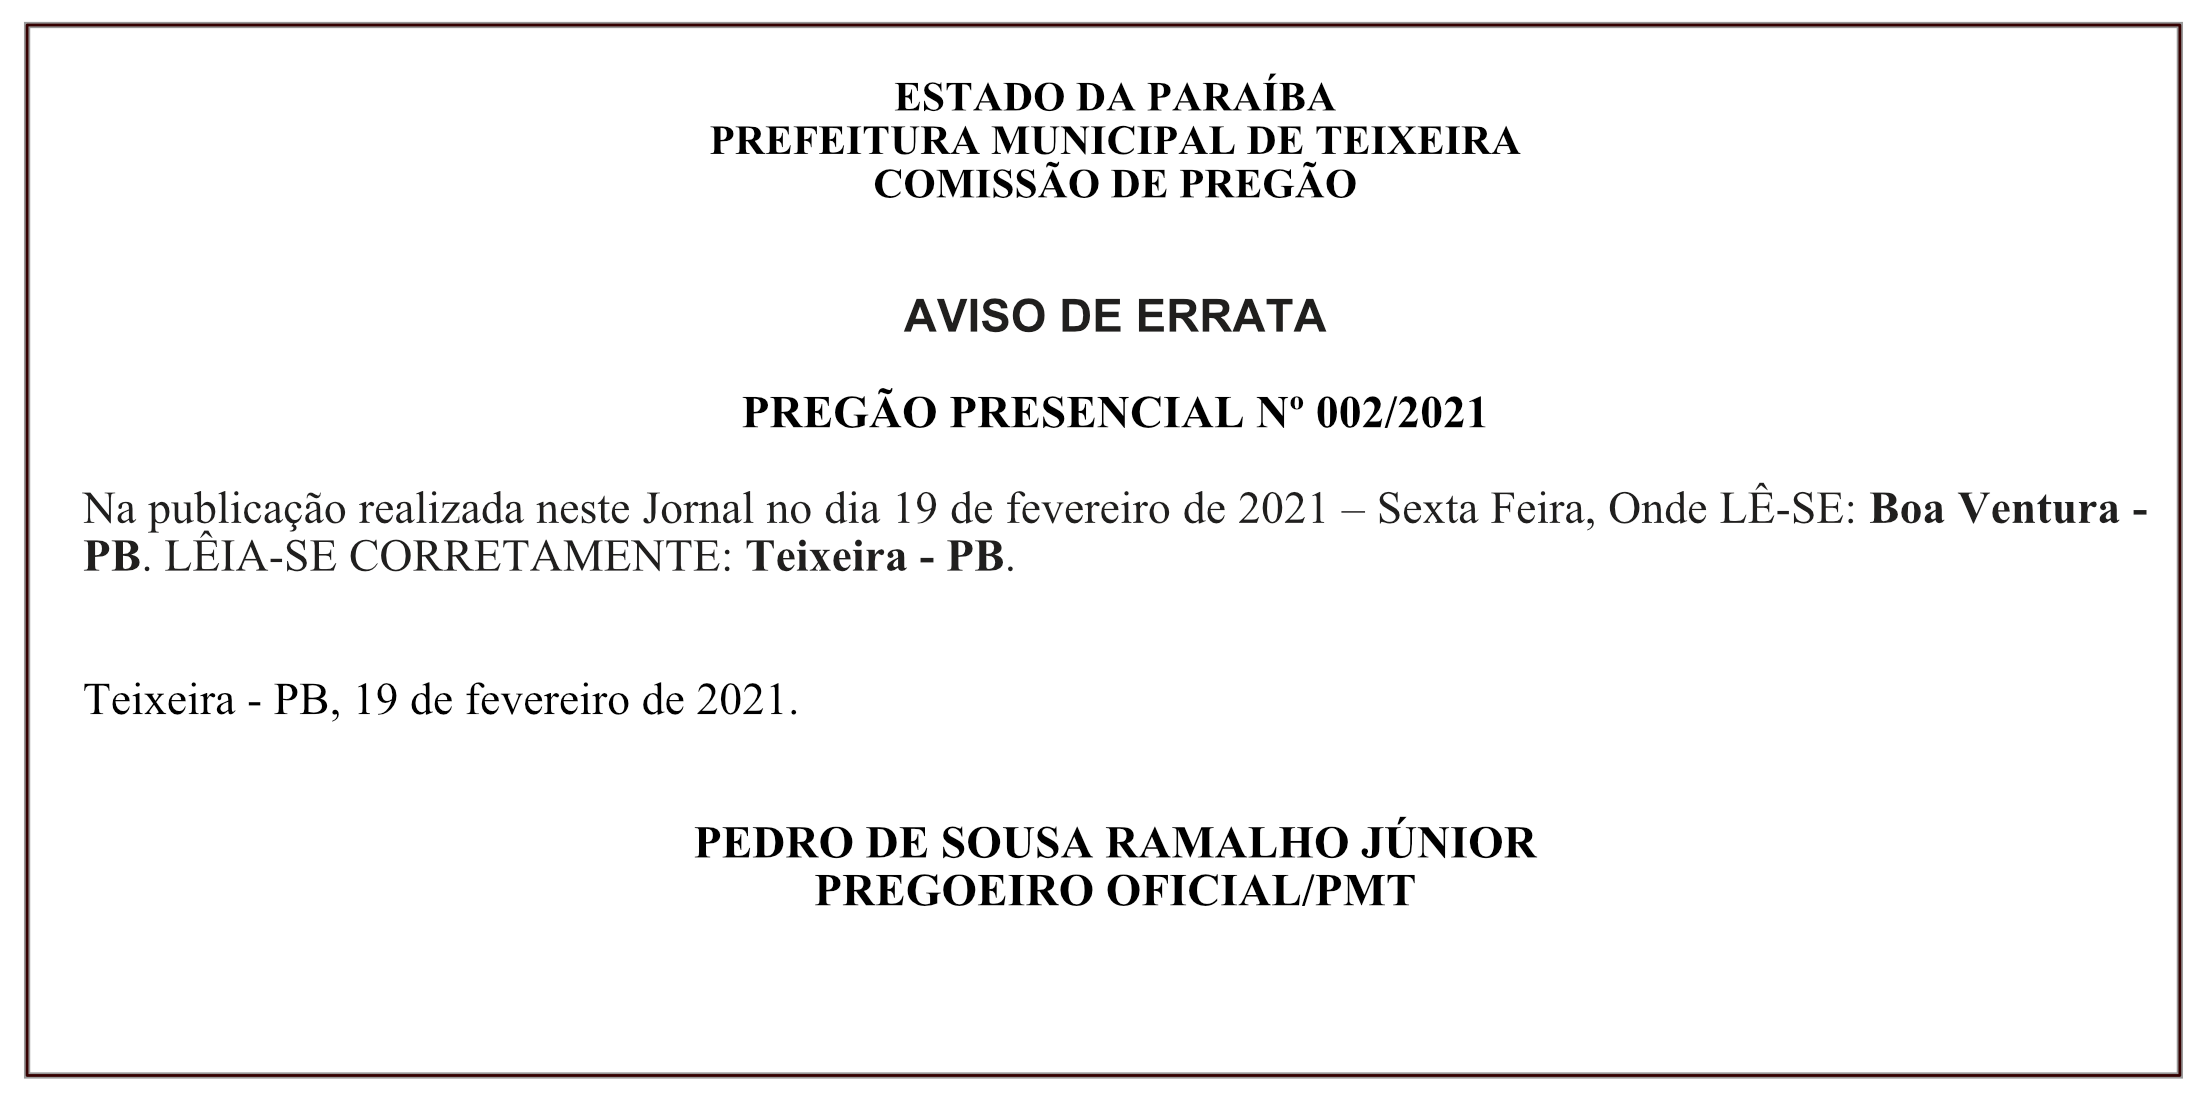 PREFEITURA MUNICIPAL DE TEIXEIRA – COMISSÃO DE PREGÃO – AVISO DE ERRATA – PREGÃO PRESENCIAL Nº 002/2021